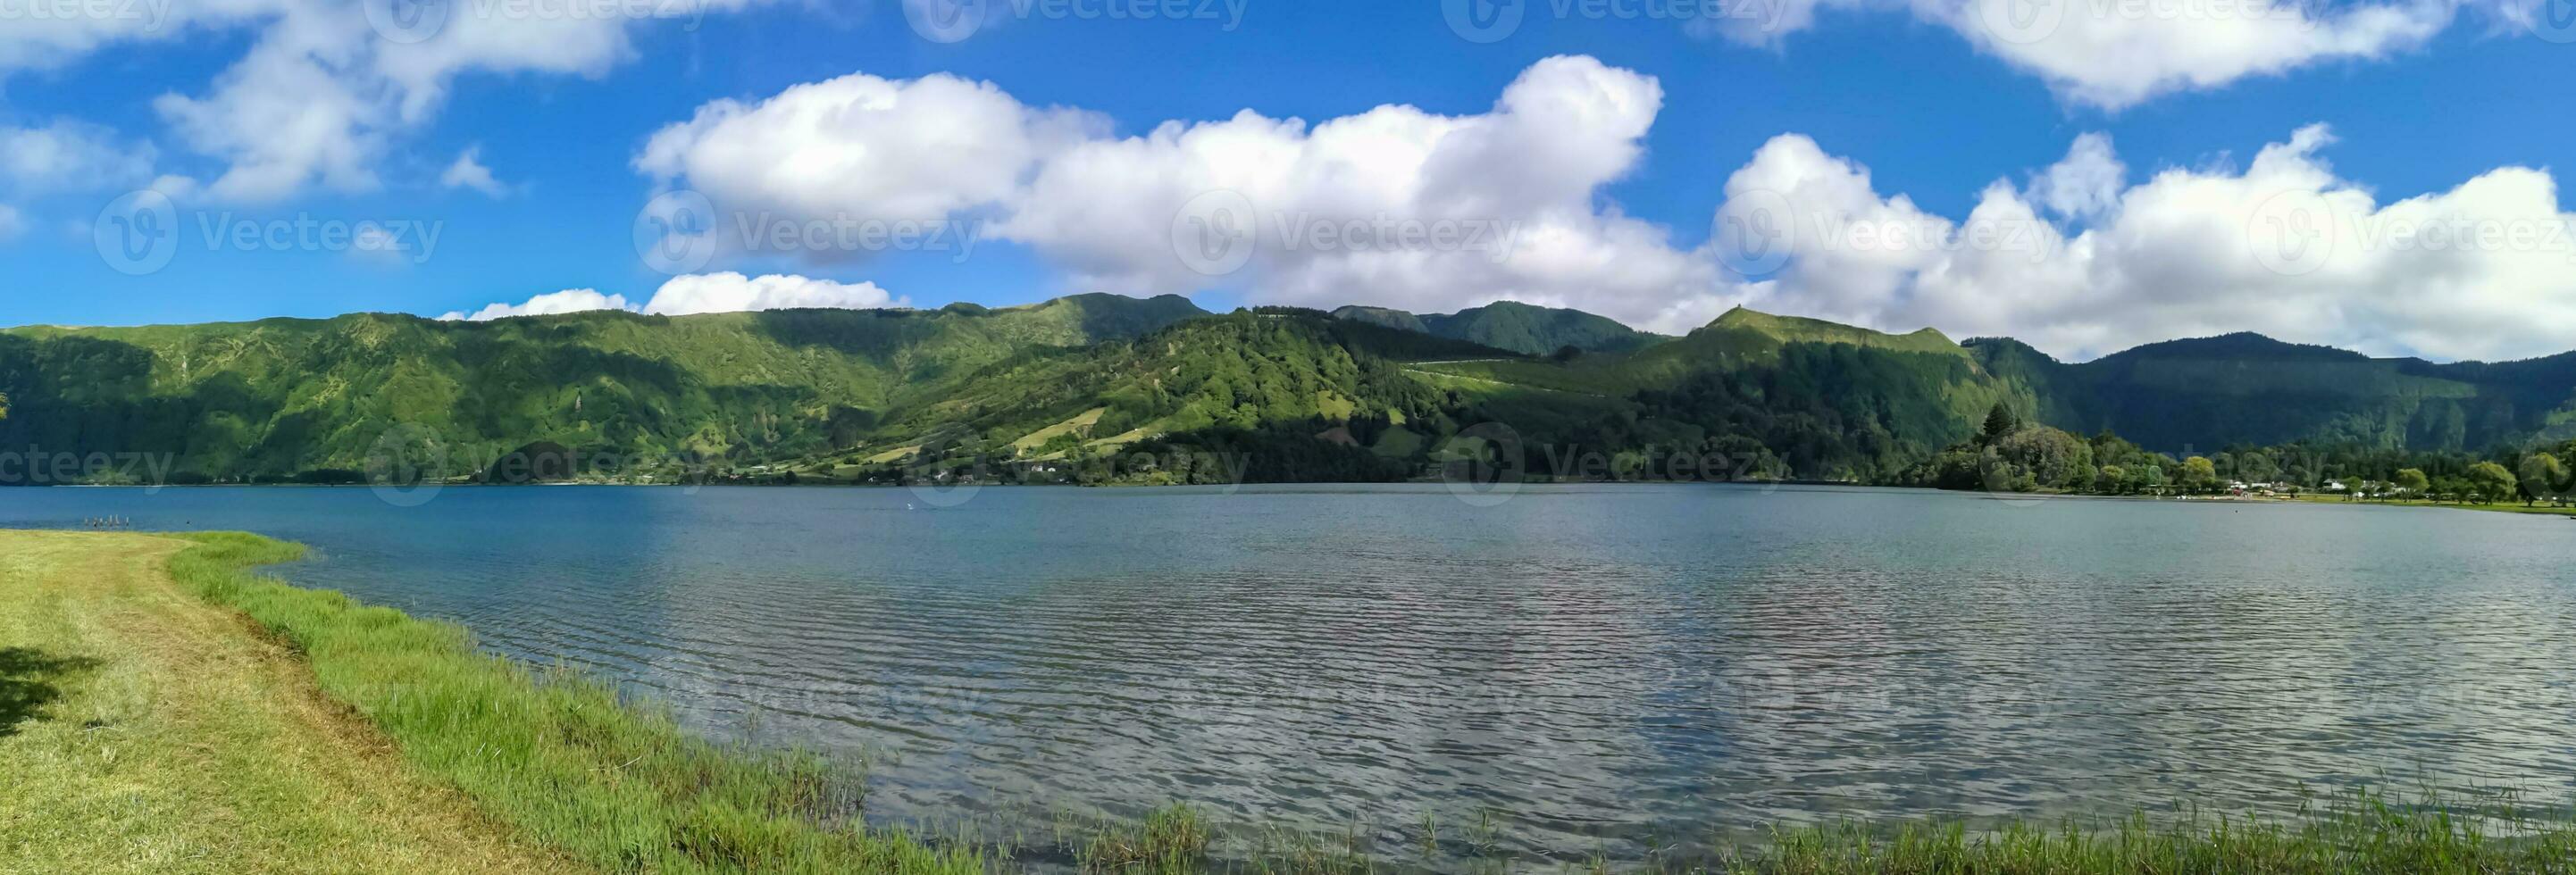 lagoa Das sete cidades è collocato su il isola di sao miguel, azzorre e è caratterizzato di il Doppio colorazione di suo acque, nel verde e blu foto